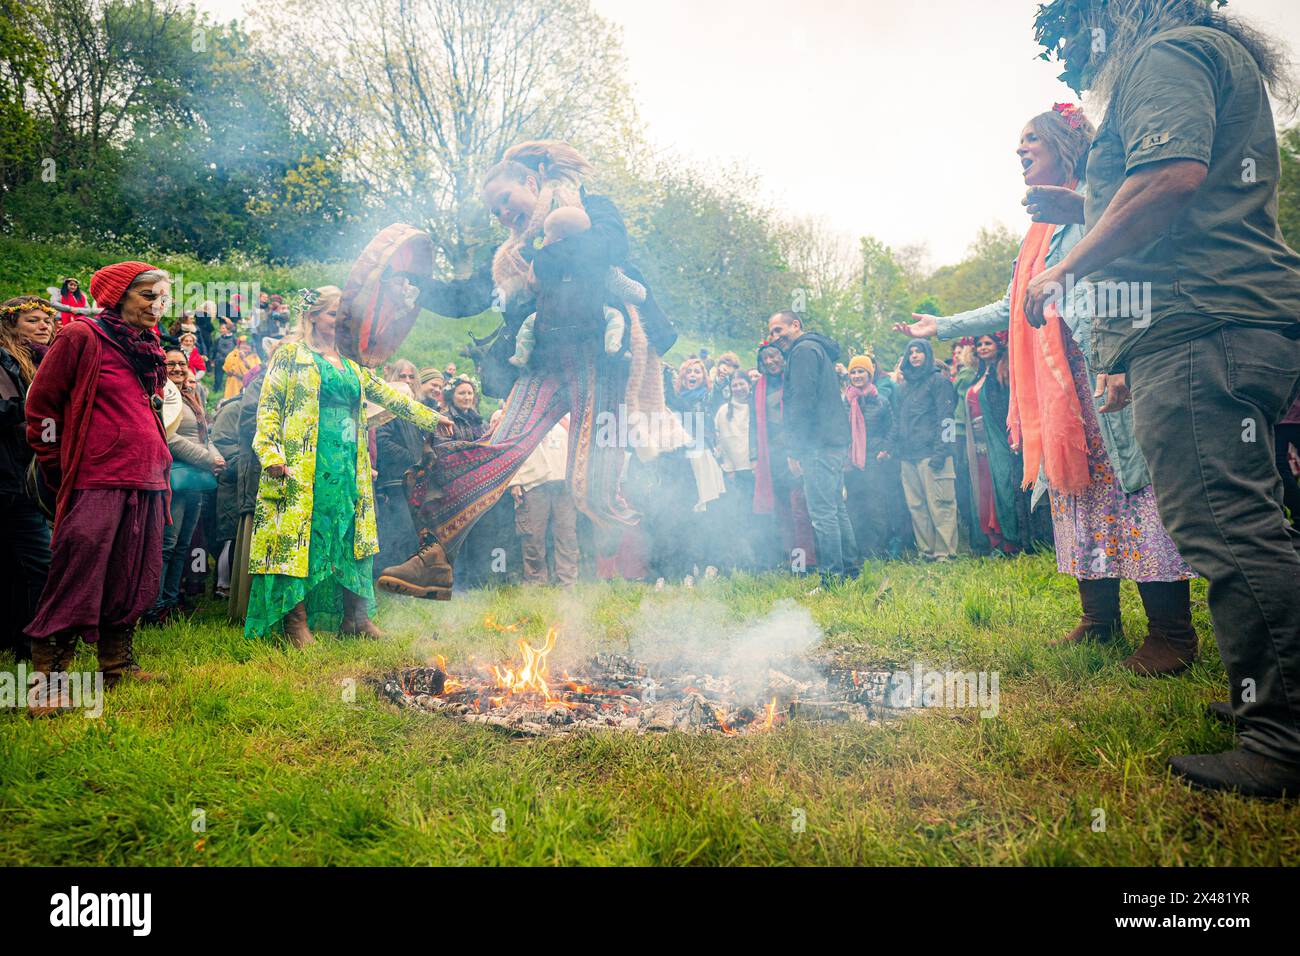 Les gens sautent le feu pendant les célébrations de Beltane à Glastonbury Chalice Well, où ils observent une interprétation moderne de l'ancien rite de fertilité païenne celtique du printemps. Date de la photo : mercredi 1er mai 2024. Banque D'Images